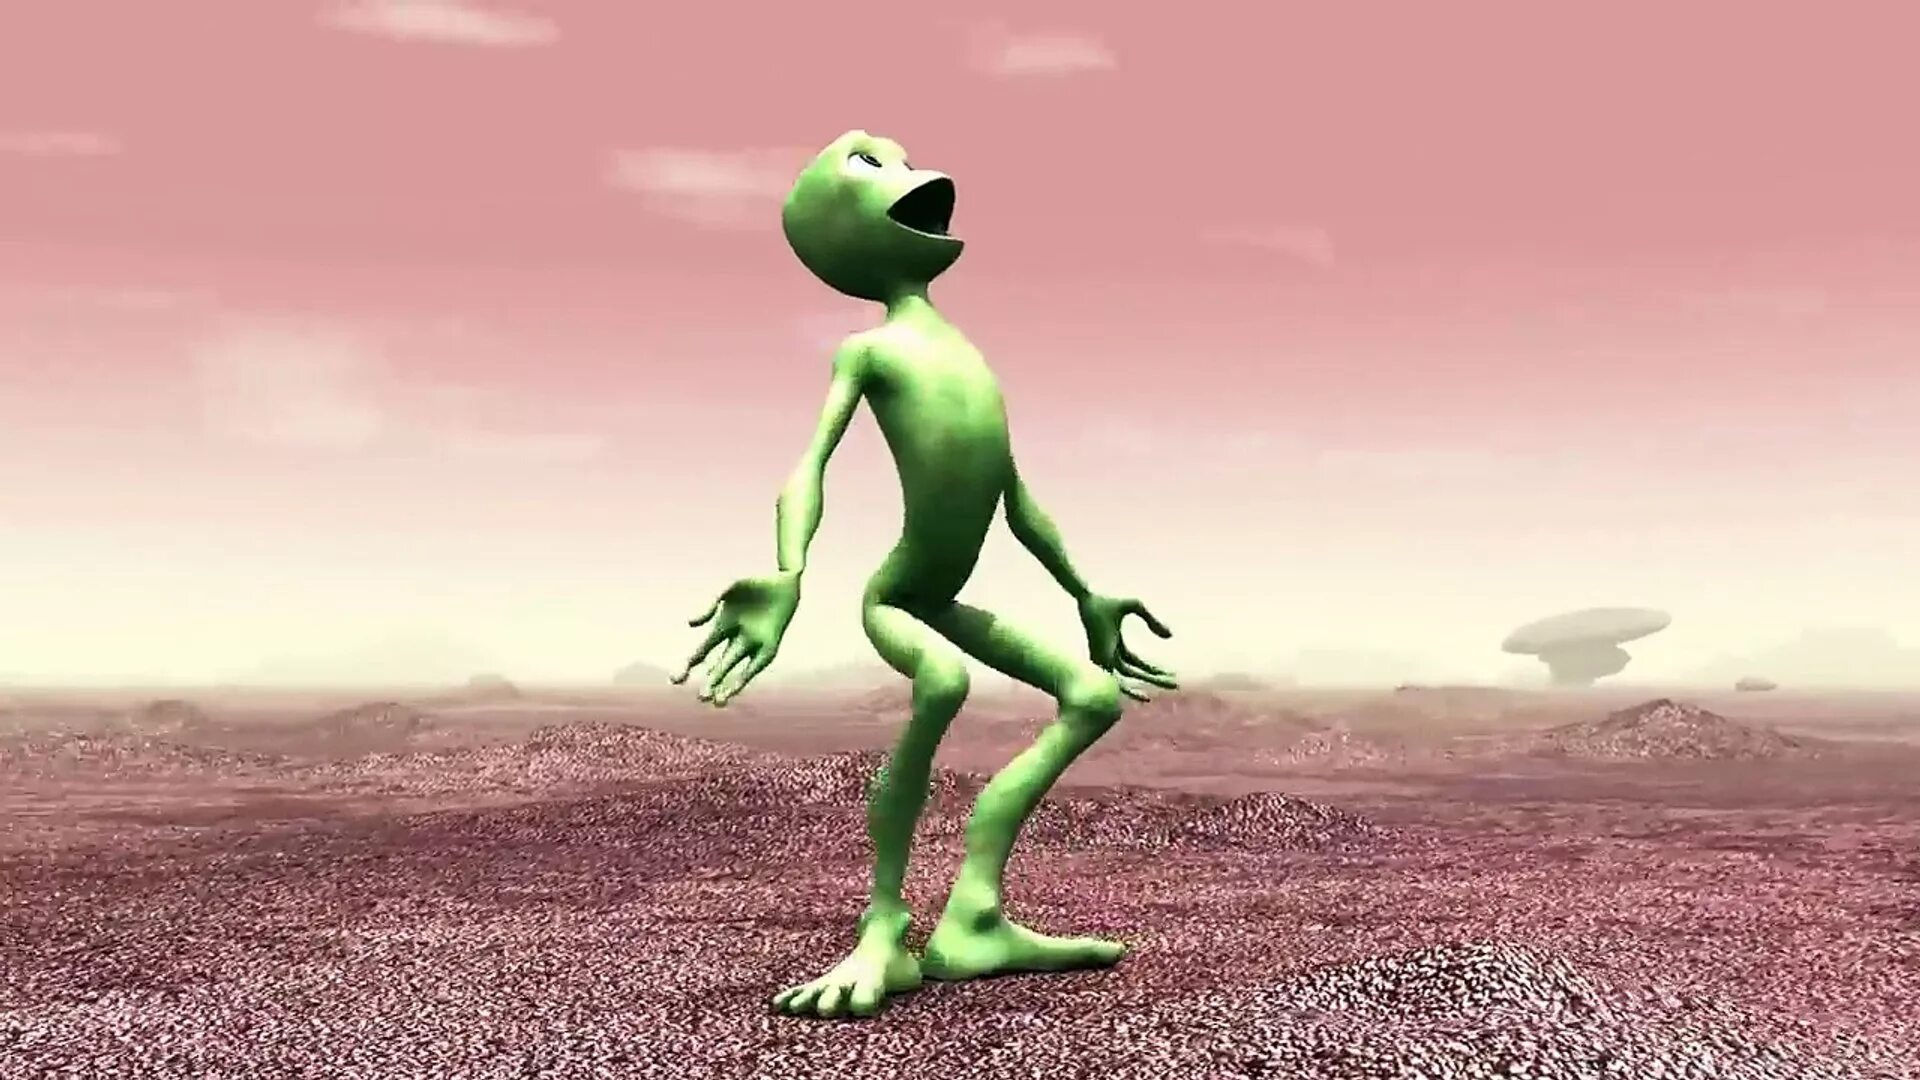 Dame tu cosita cutty ranks. Тамито косито. Зеленые человечки. Танцующий зеленый человечек инопланетянин. Танцующий зеленый пришелец.